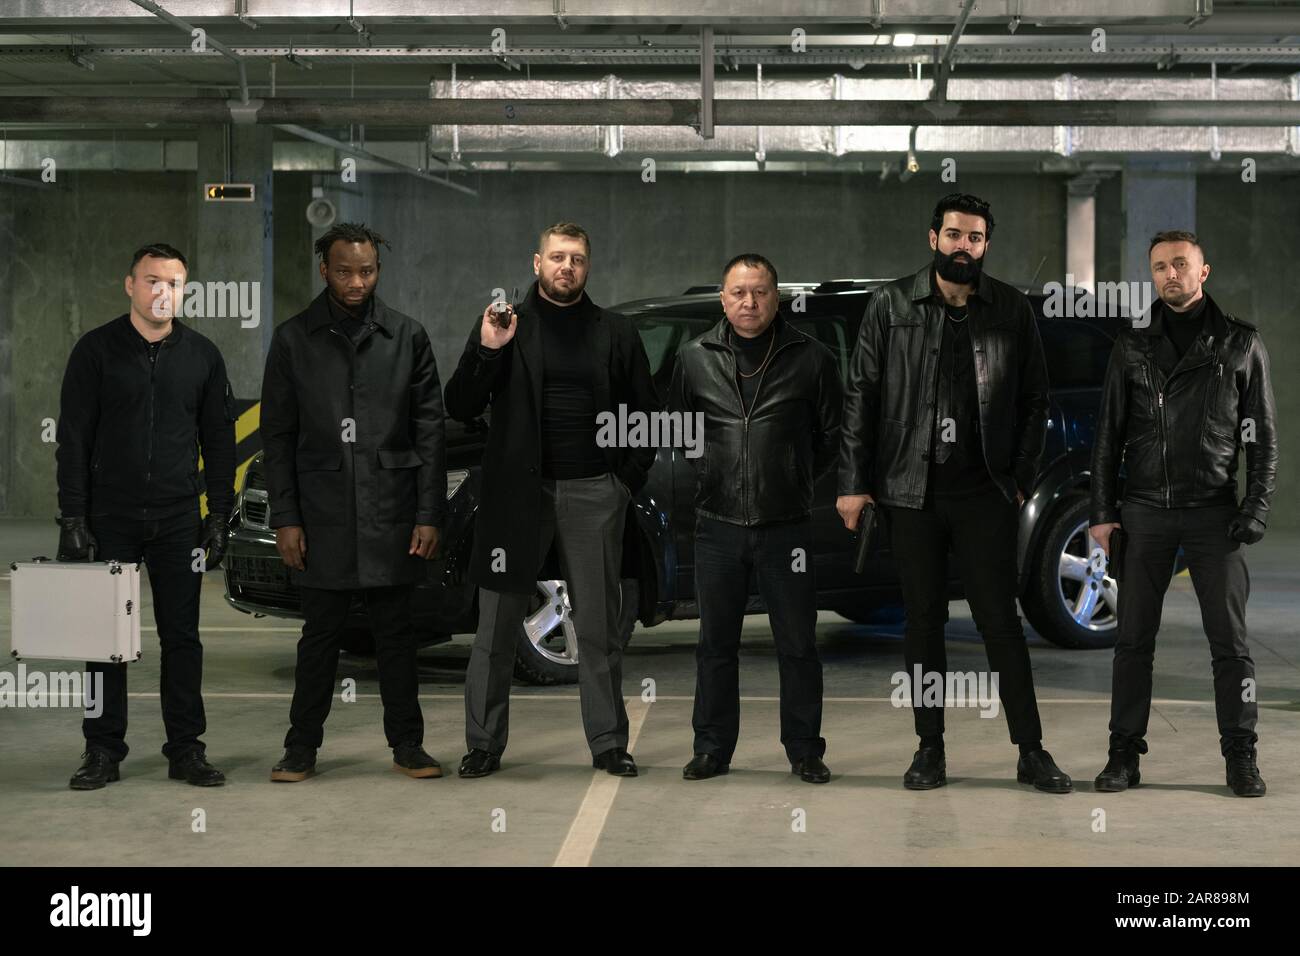 Reihe interkultureller bewaffneter Gangster oder Verbrecher in schwarzen Jacken und Jeans Stockfoto